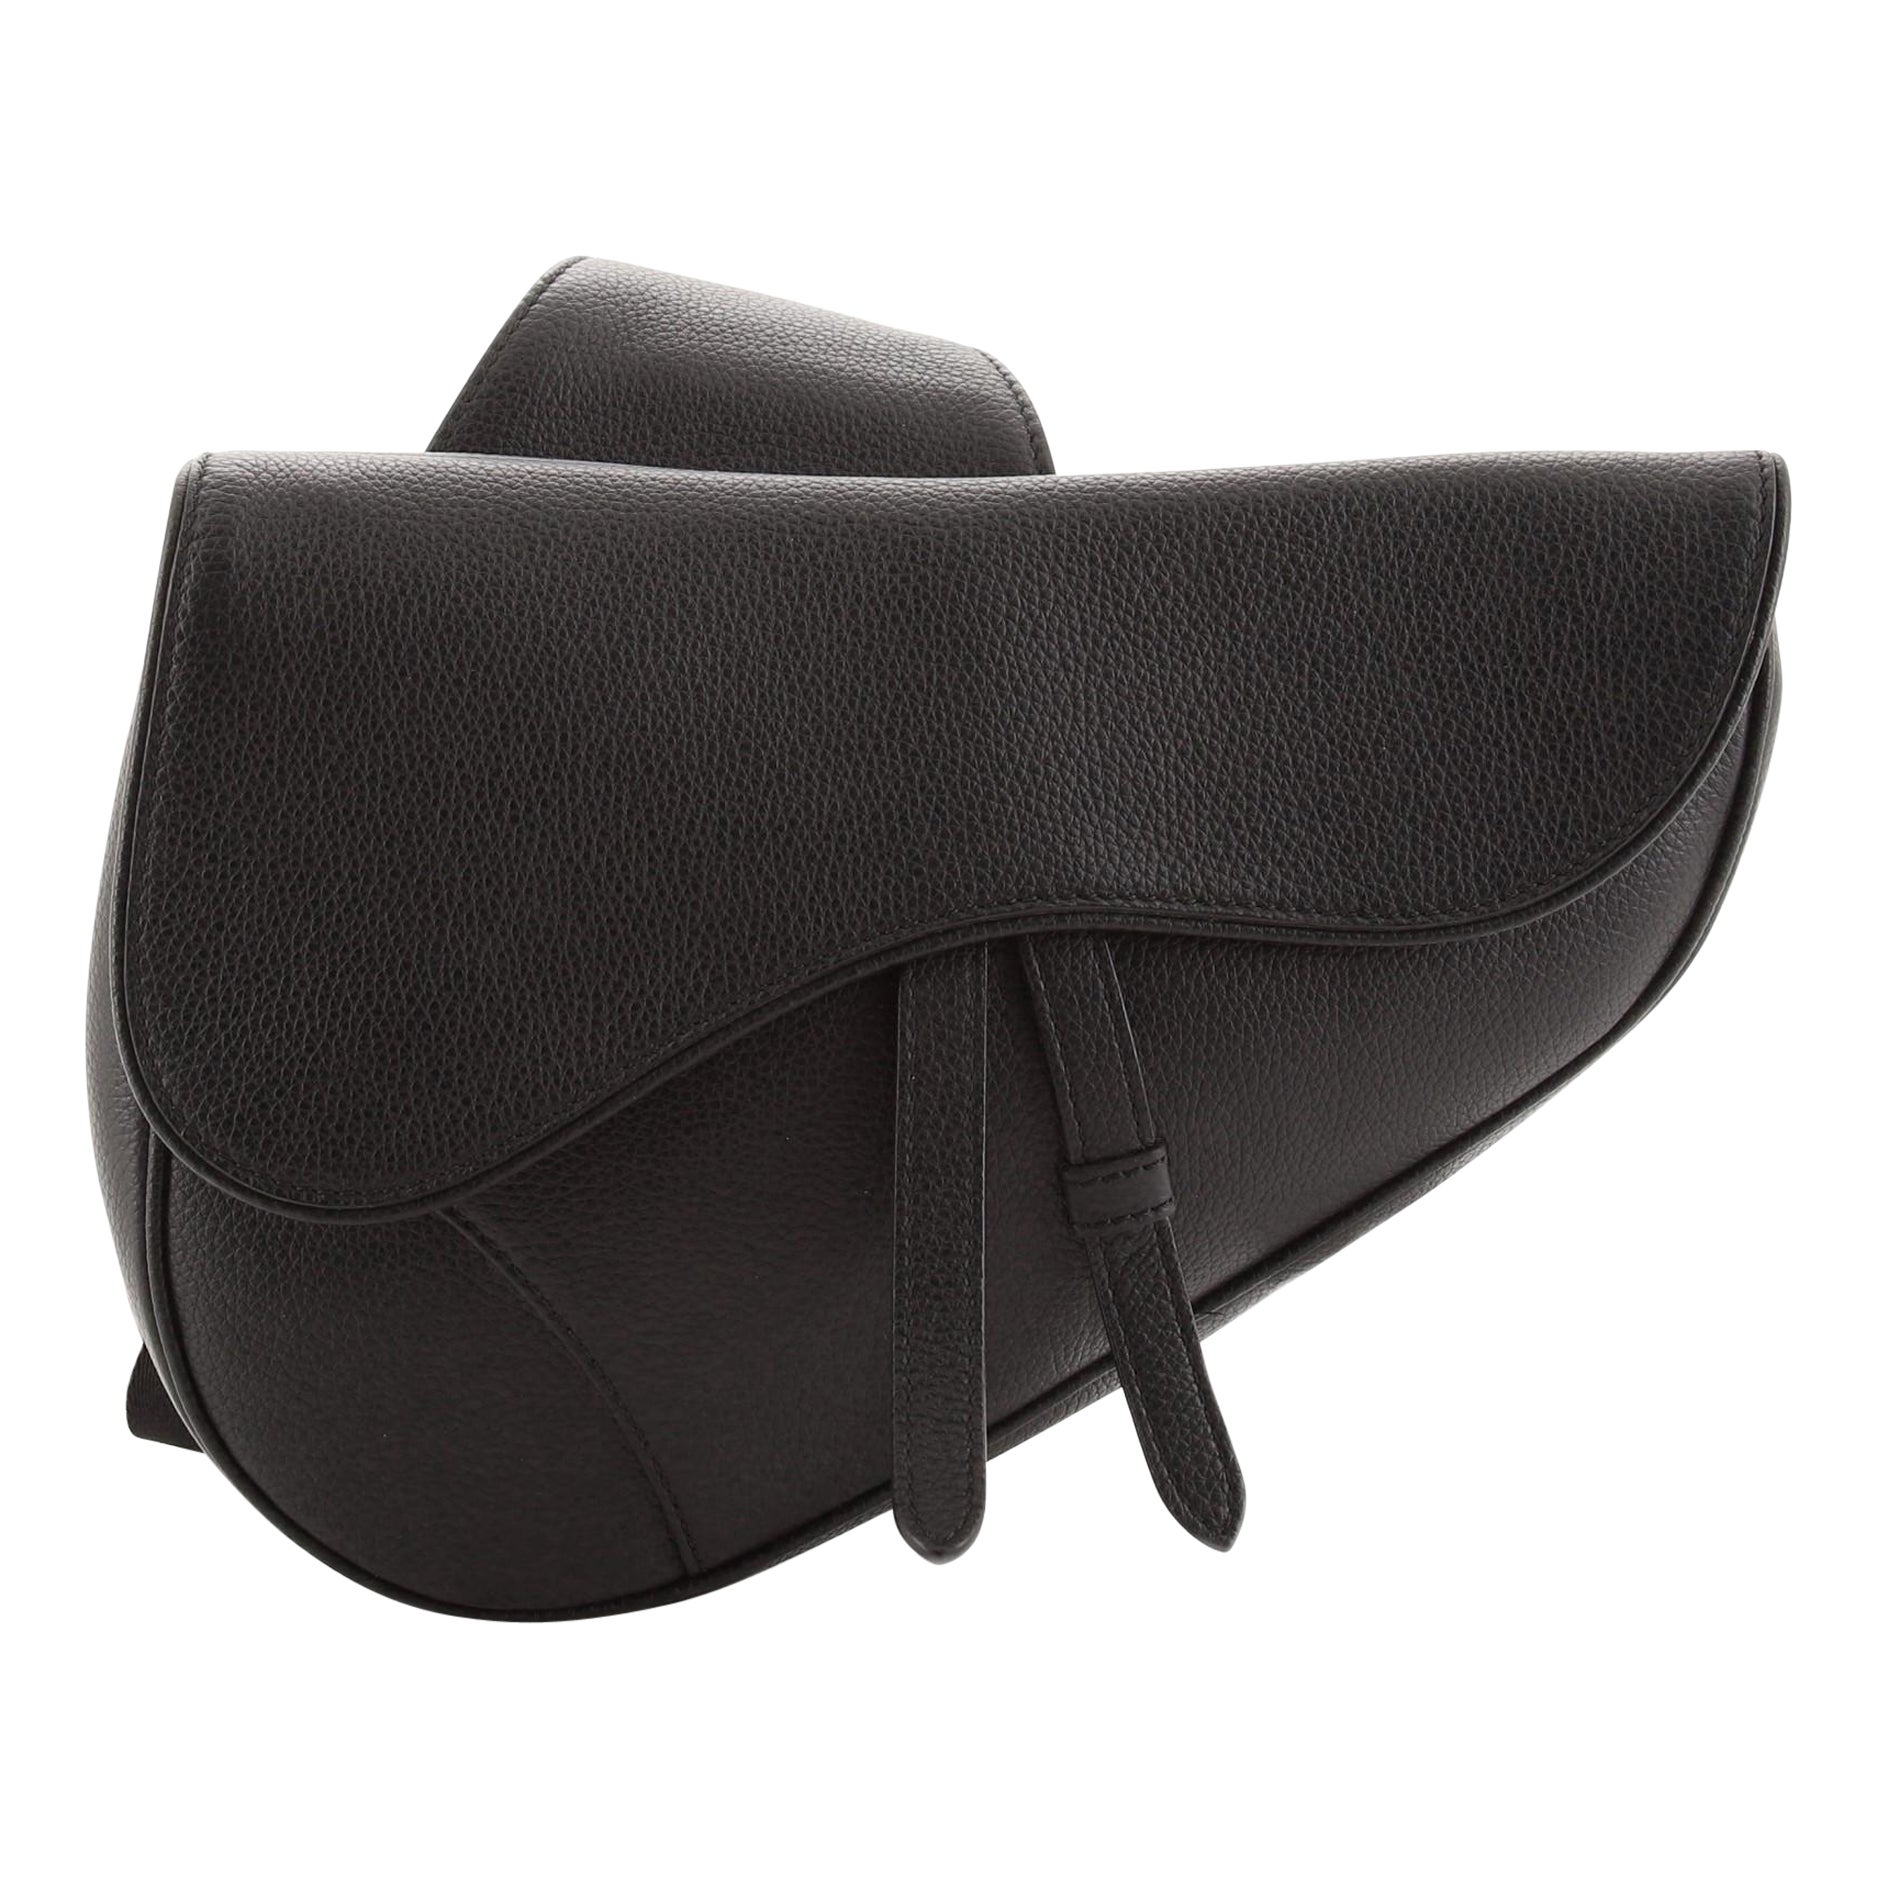 Dior Saddles - 163 For Sale on 1stDibs | dior white saddle bag 